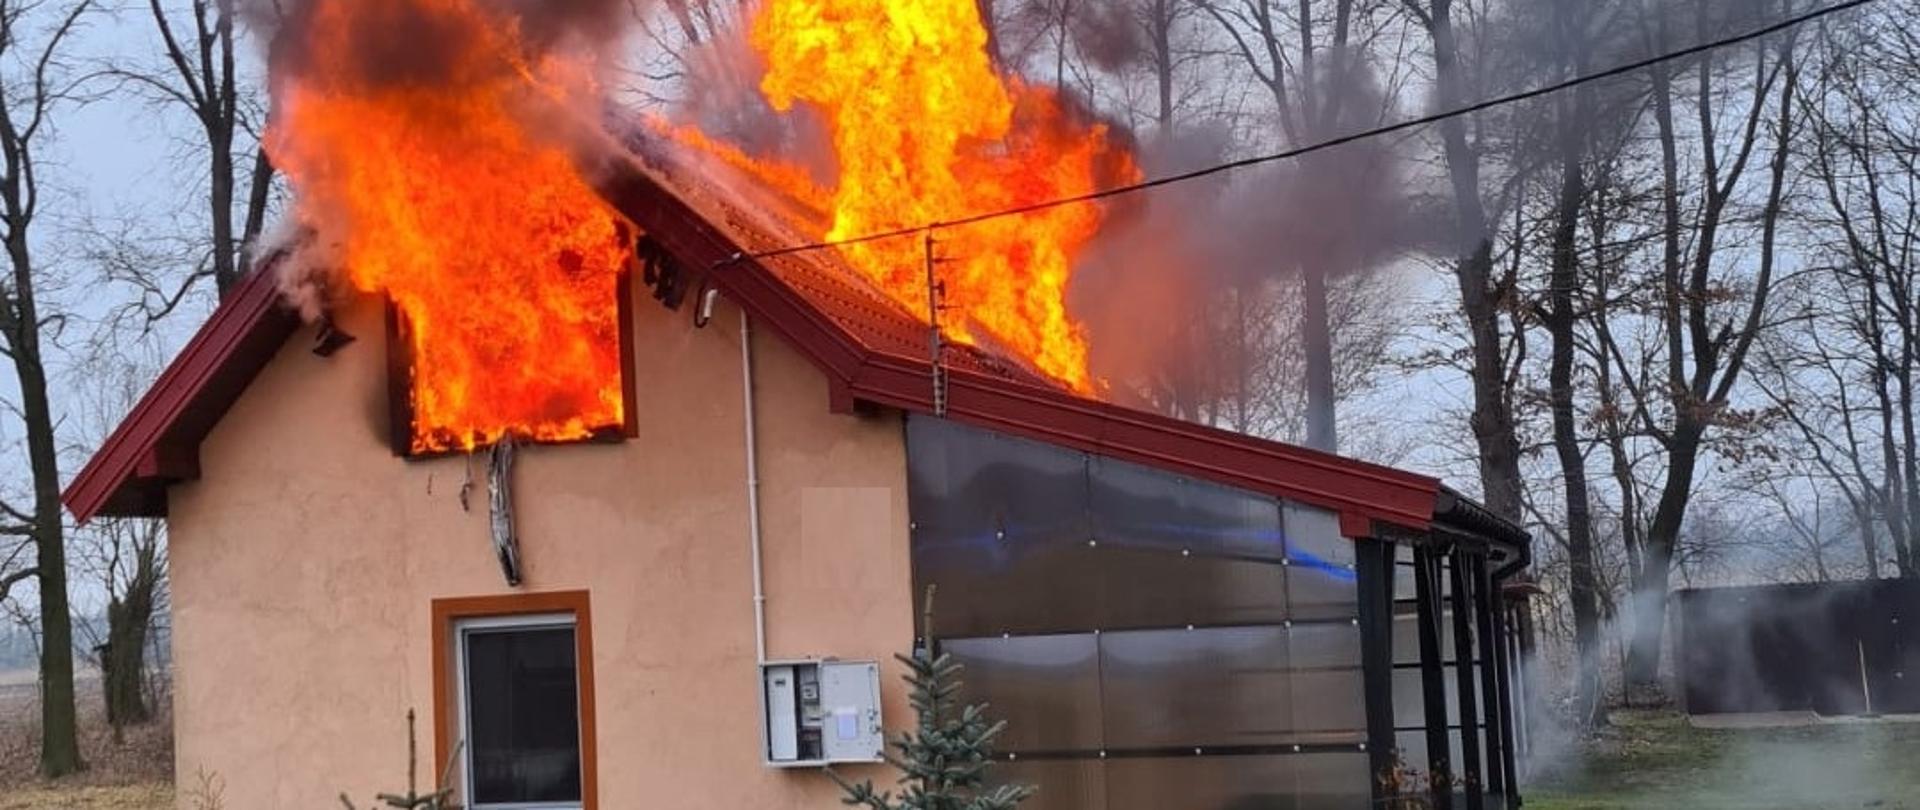 Pożar budynku mieszkalnego w miejscowości Skęczno